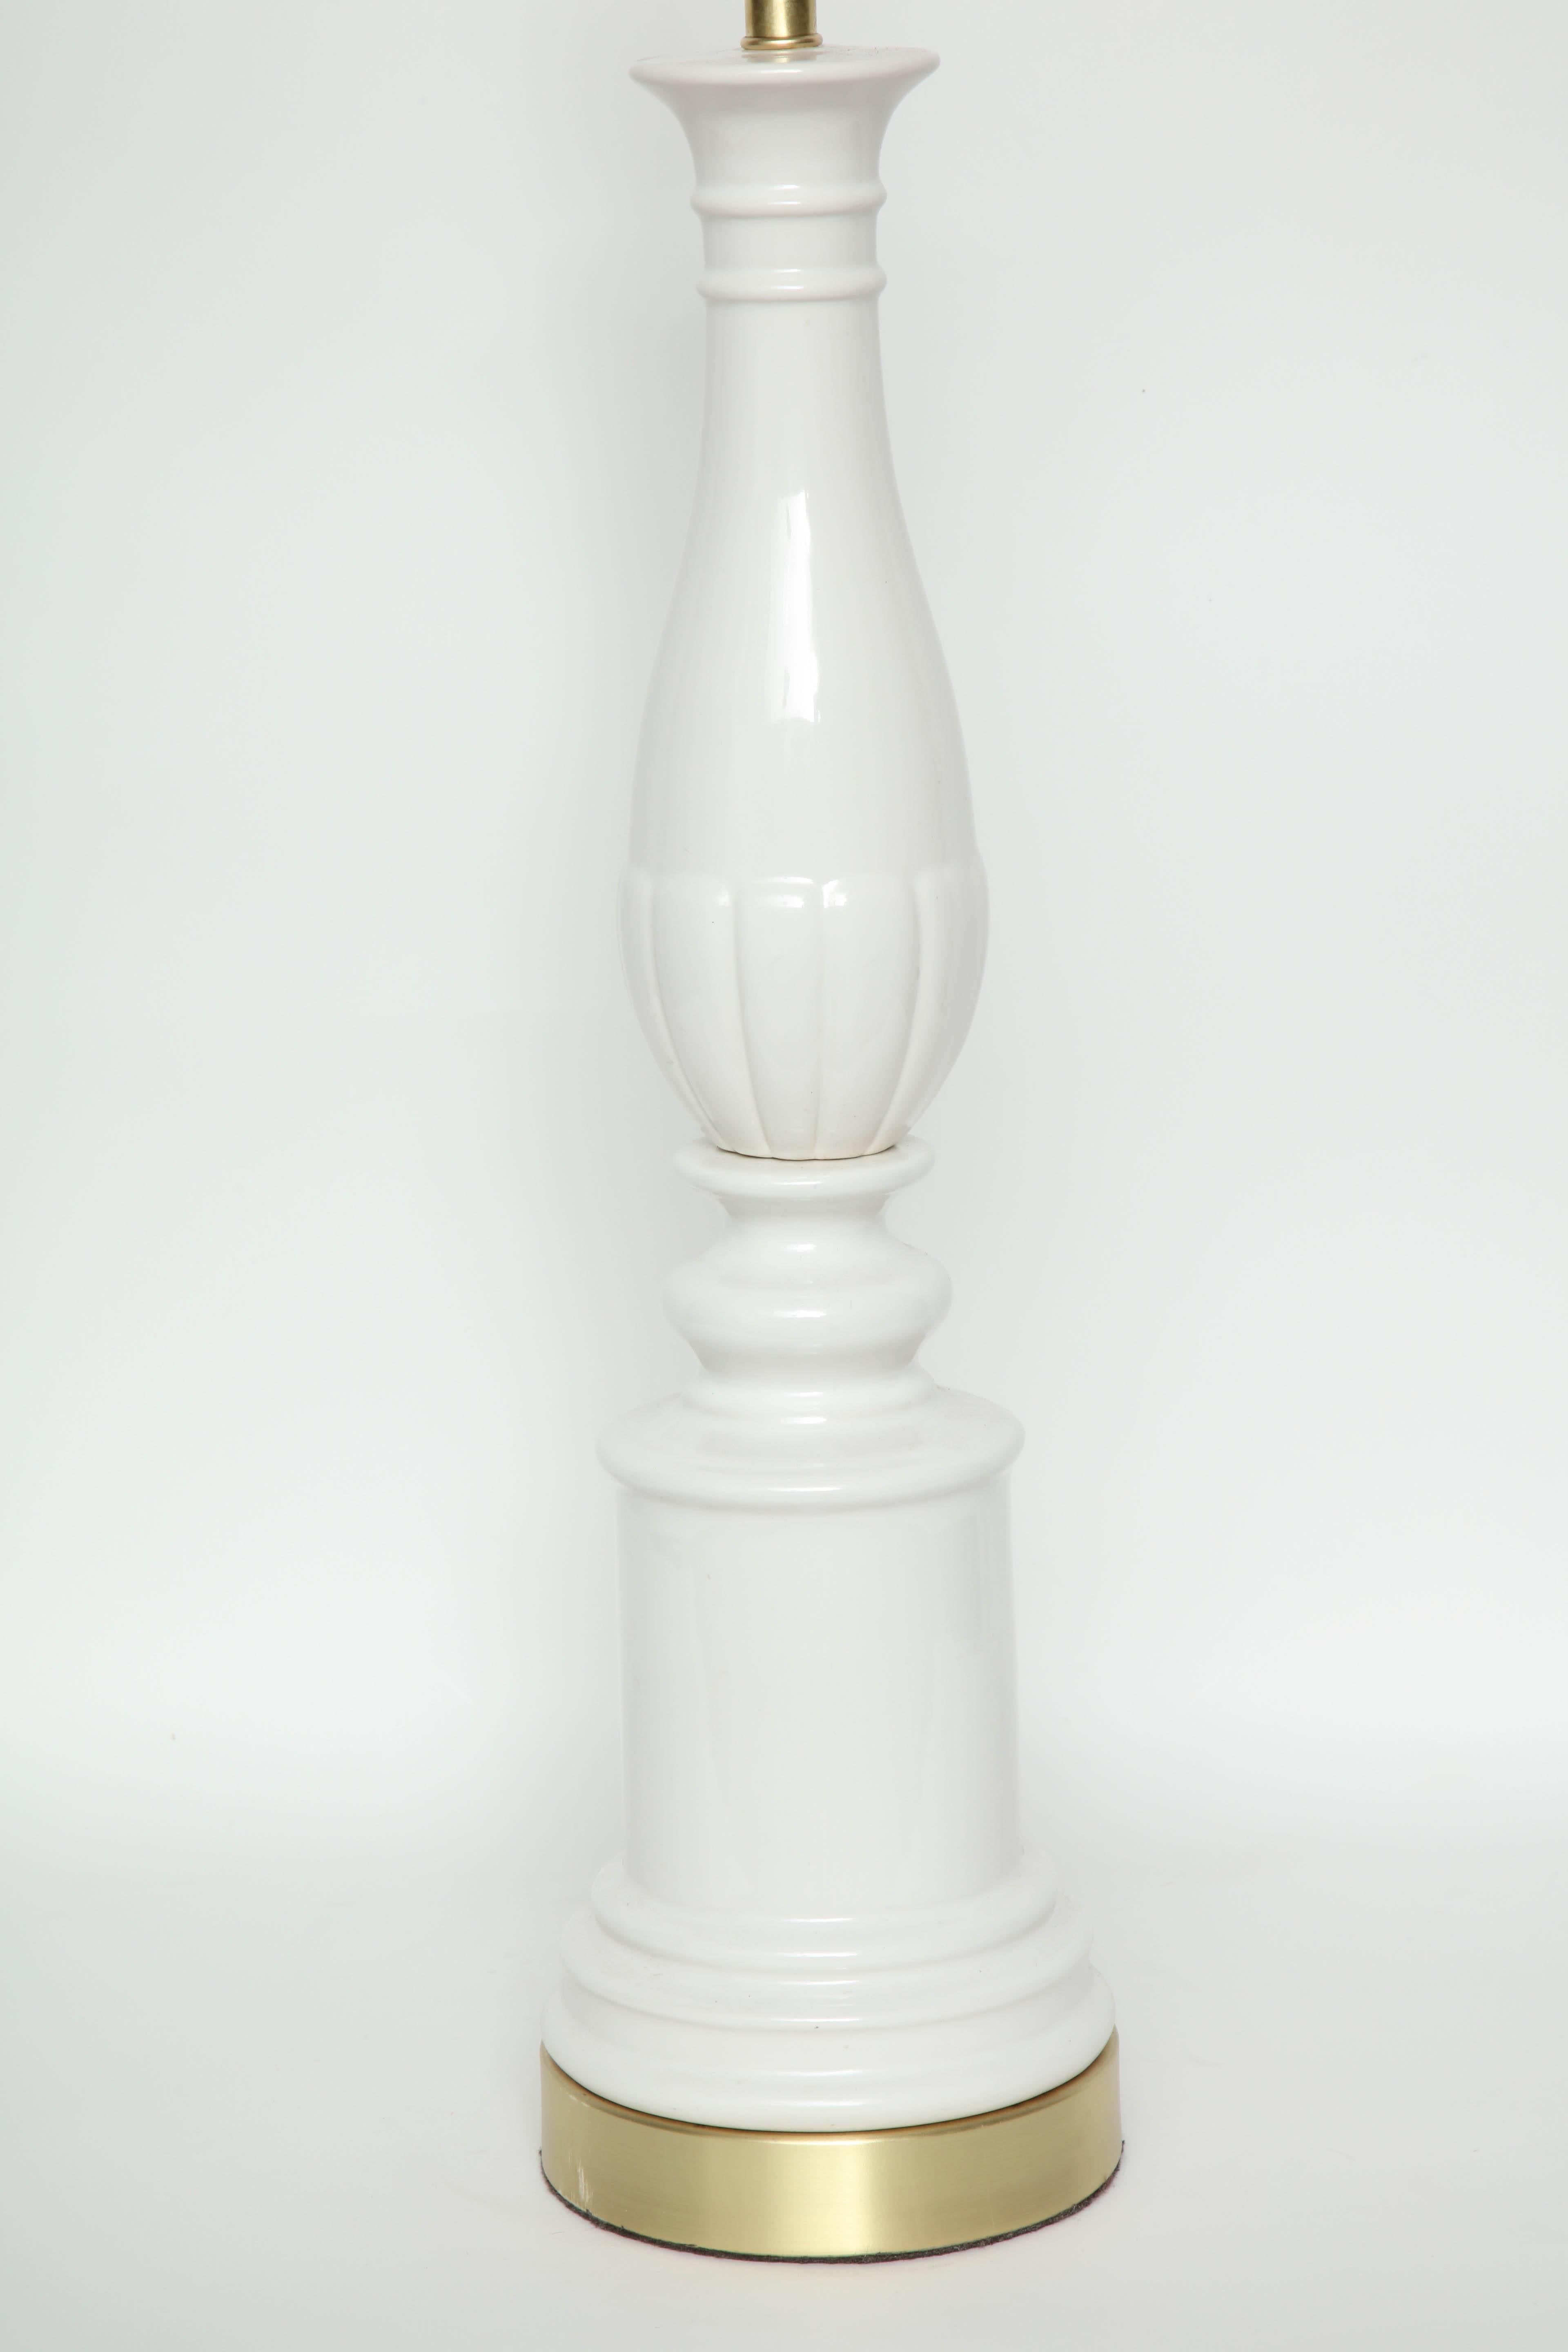 Paire de lampes balustres stylisées en porcelaine Hollywood Regency à glaçure ivoire reposant sur des bases en laiton satiné. Recâblé pour une utilisation aux USA, ampoules 100W max.

Le corps de la lampe mesure 23 pouces.